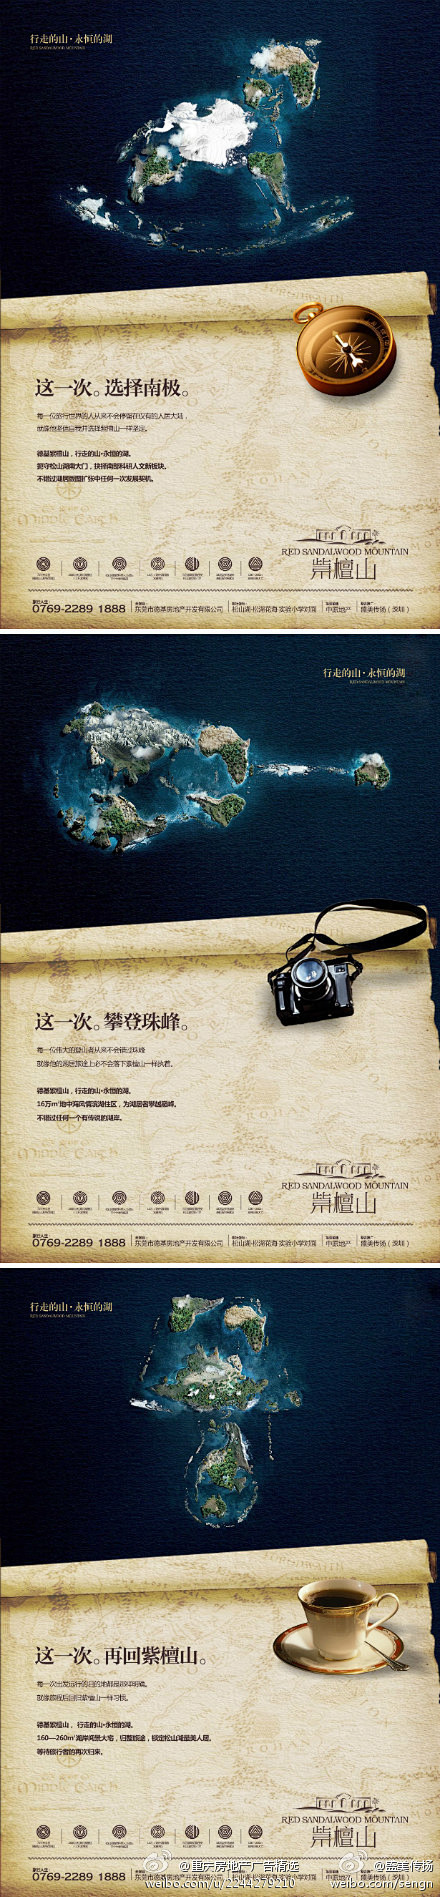 重庆房地产广告精选的照片 - 微相册